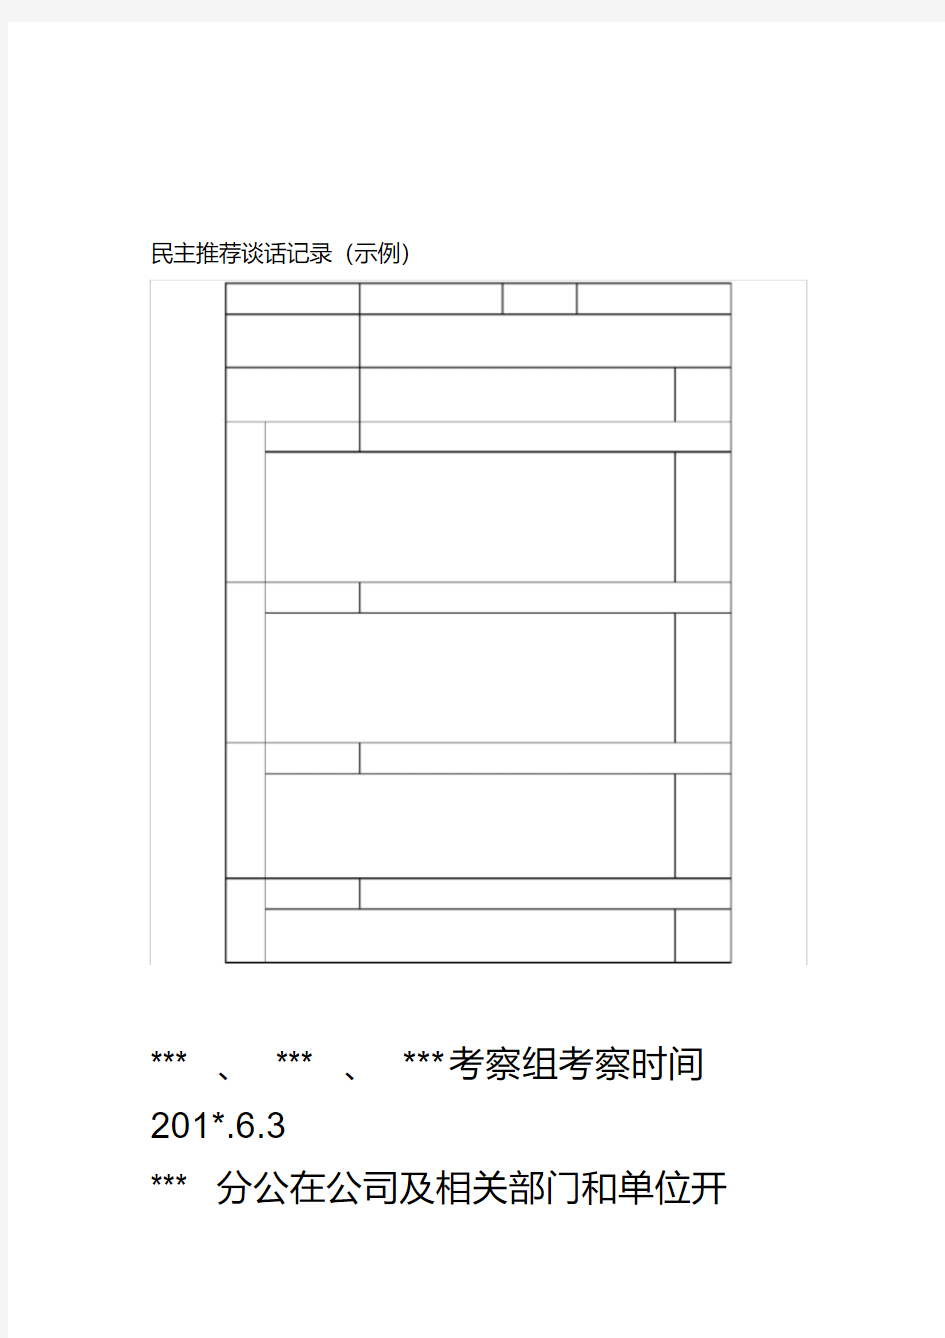 民主推荐谈话记录(示例).pdf